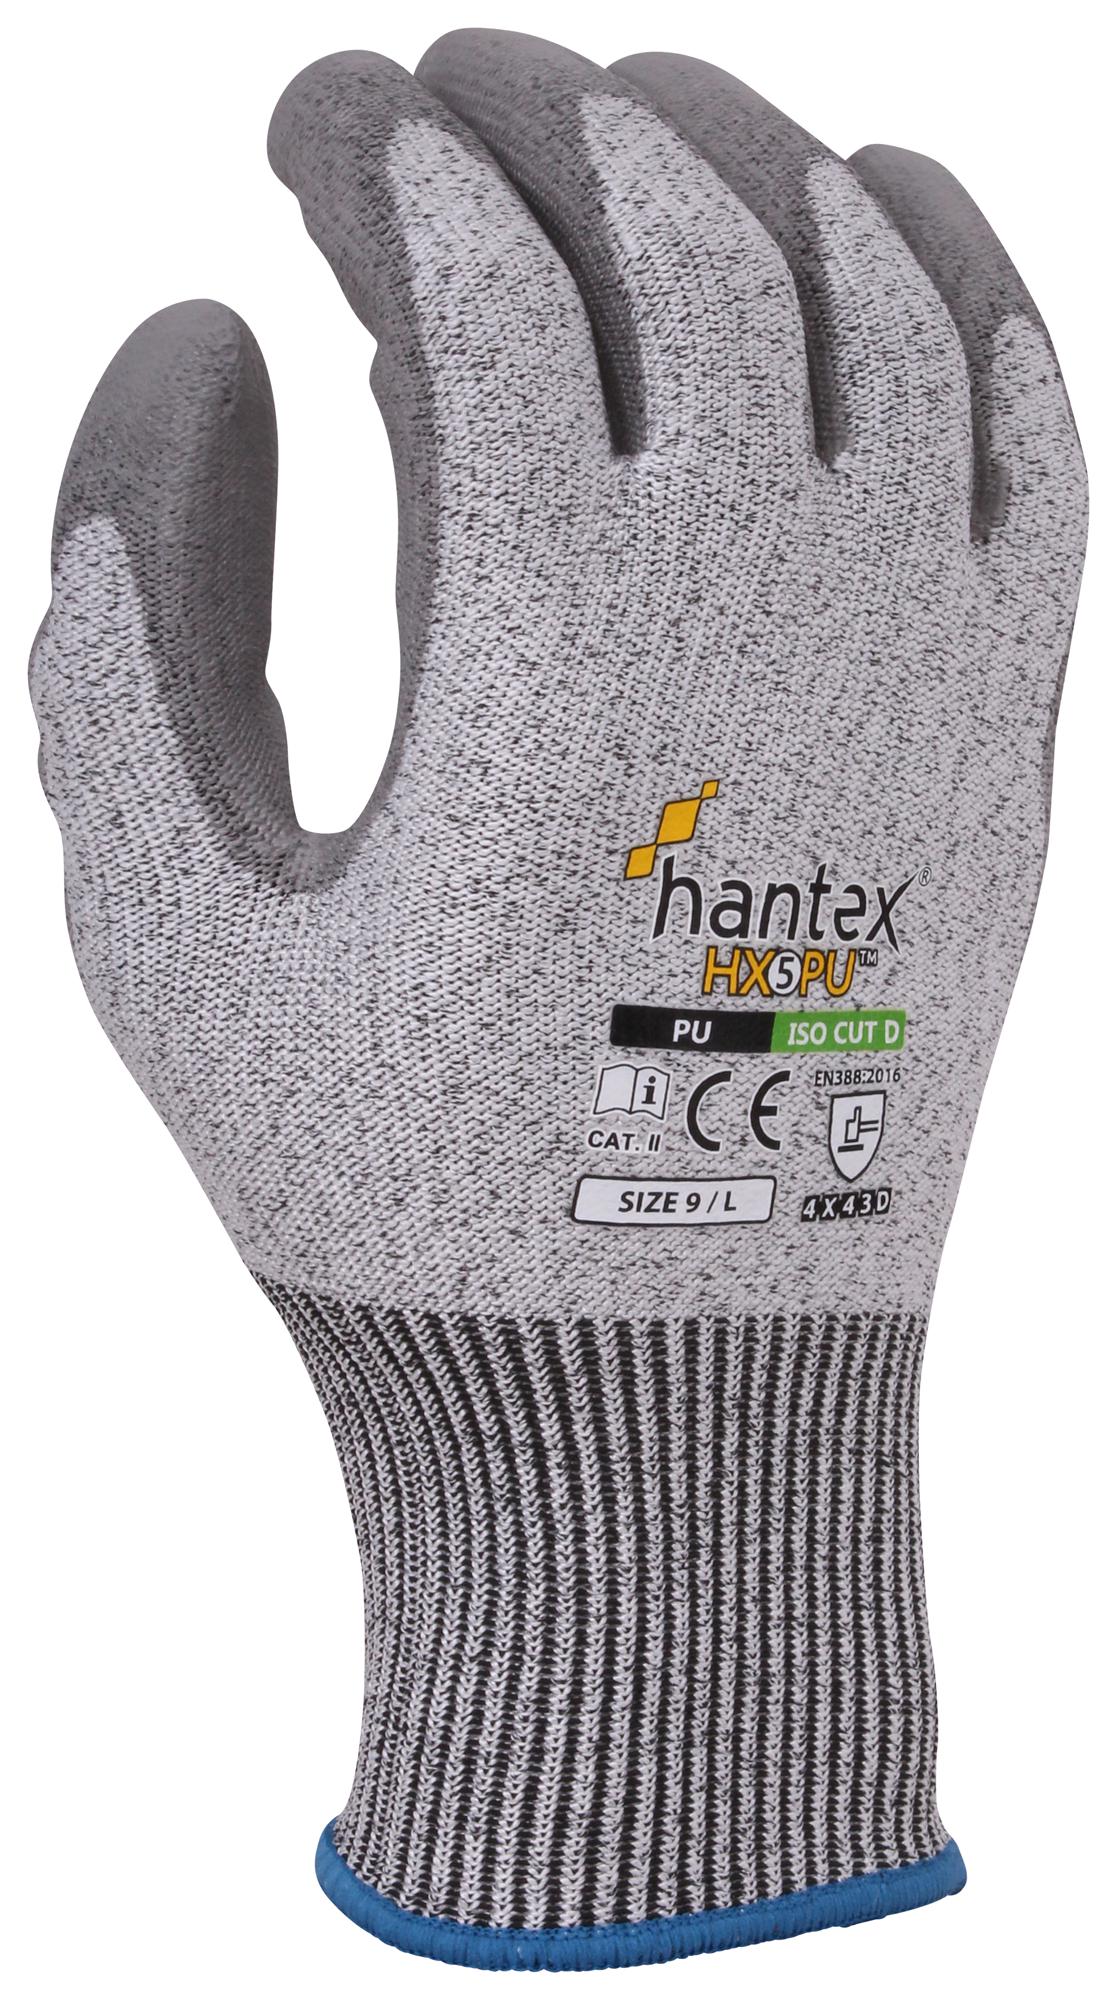 Uci G/hantex-Hx5/pu/06 Gloves, Hppe, Grey, Xs